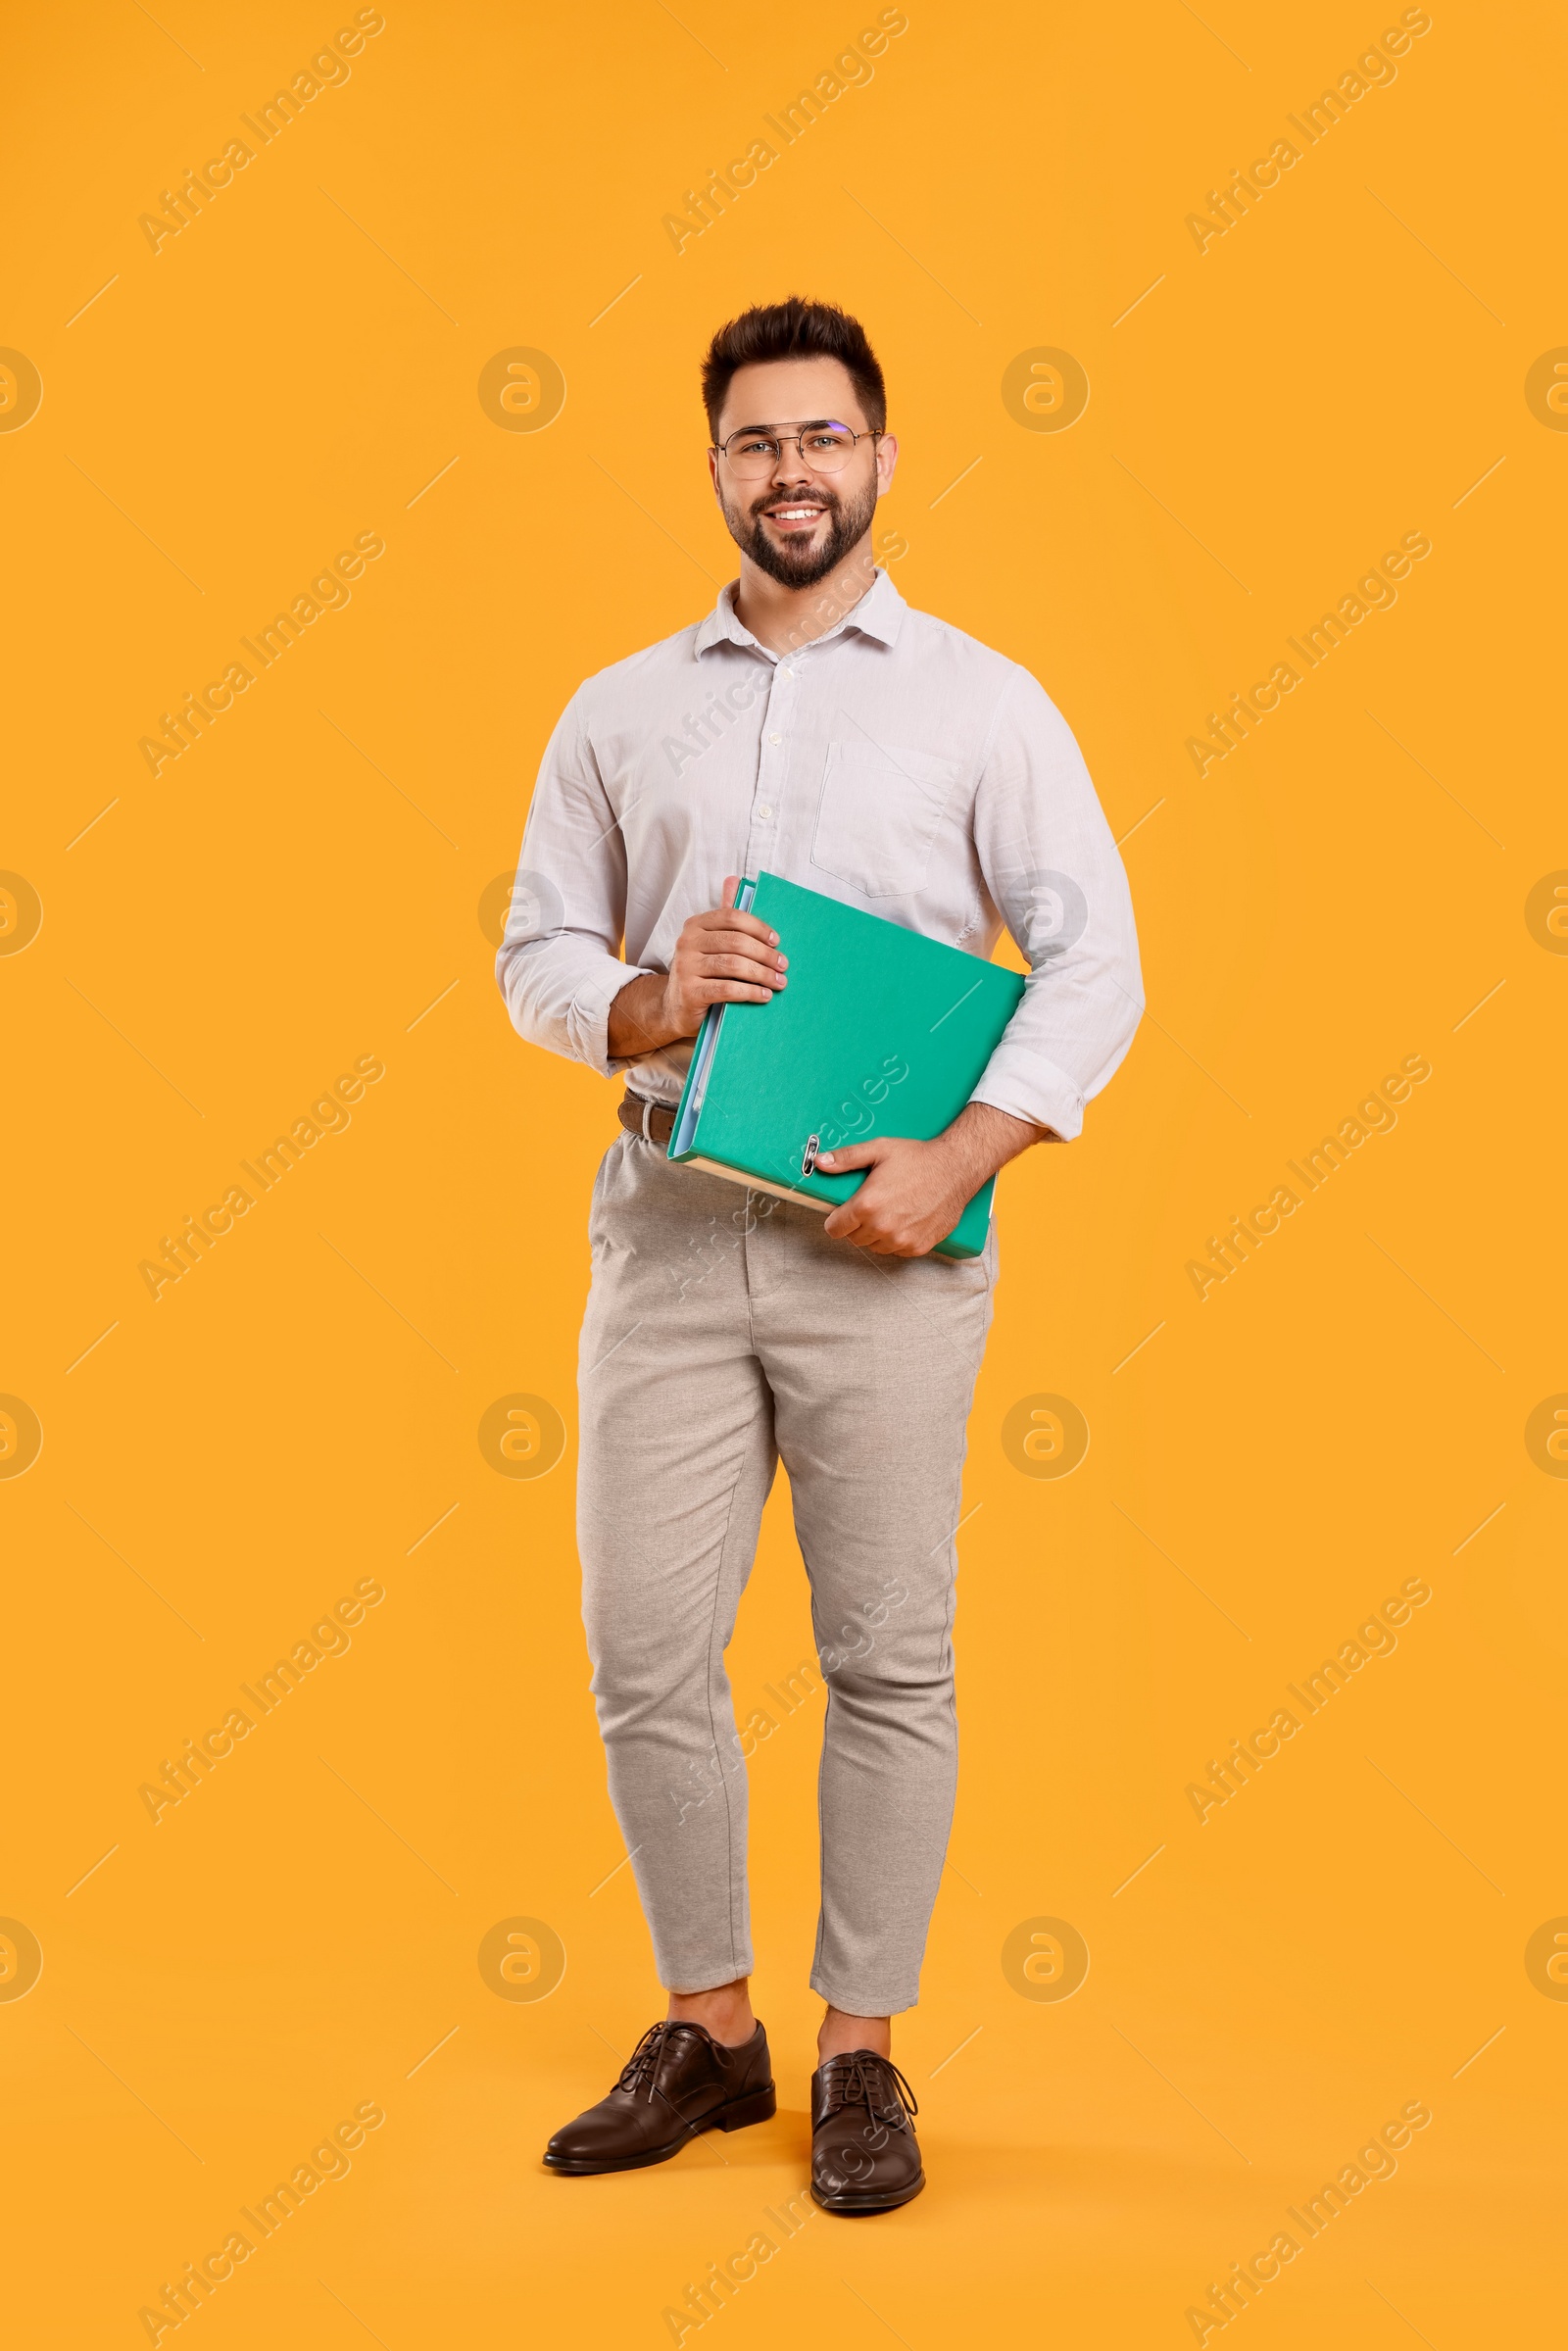 Photo of Happy man with folder on orange background